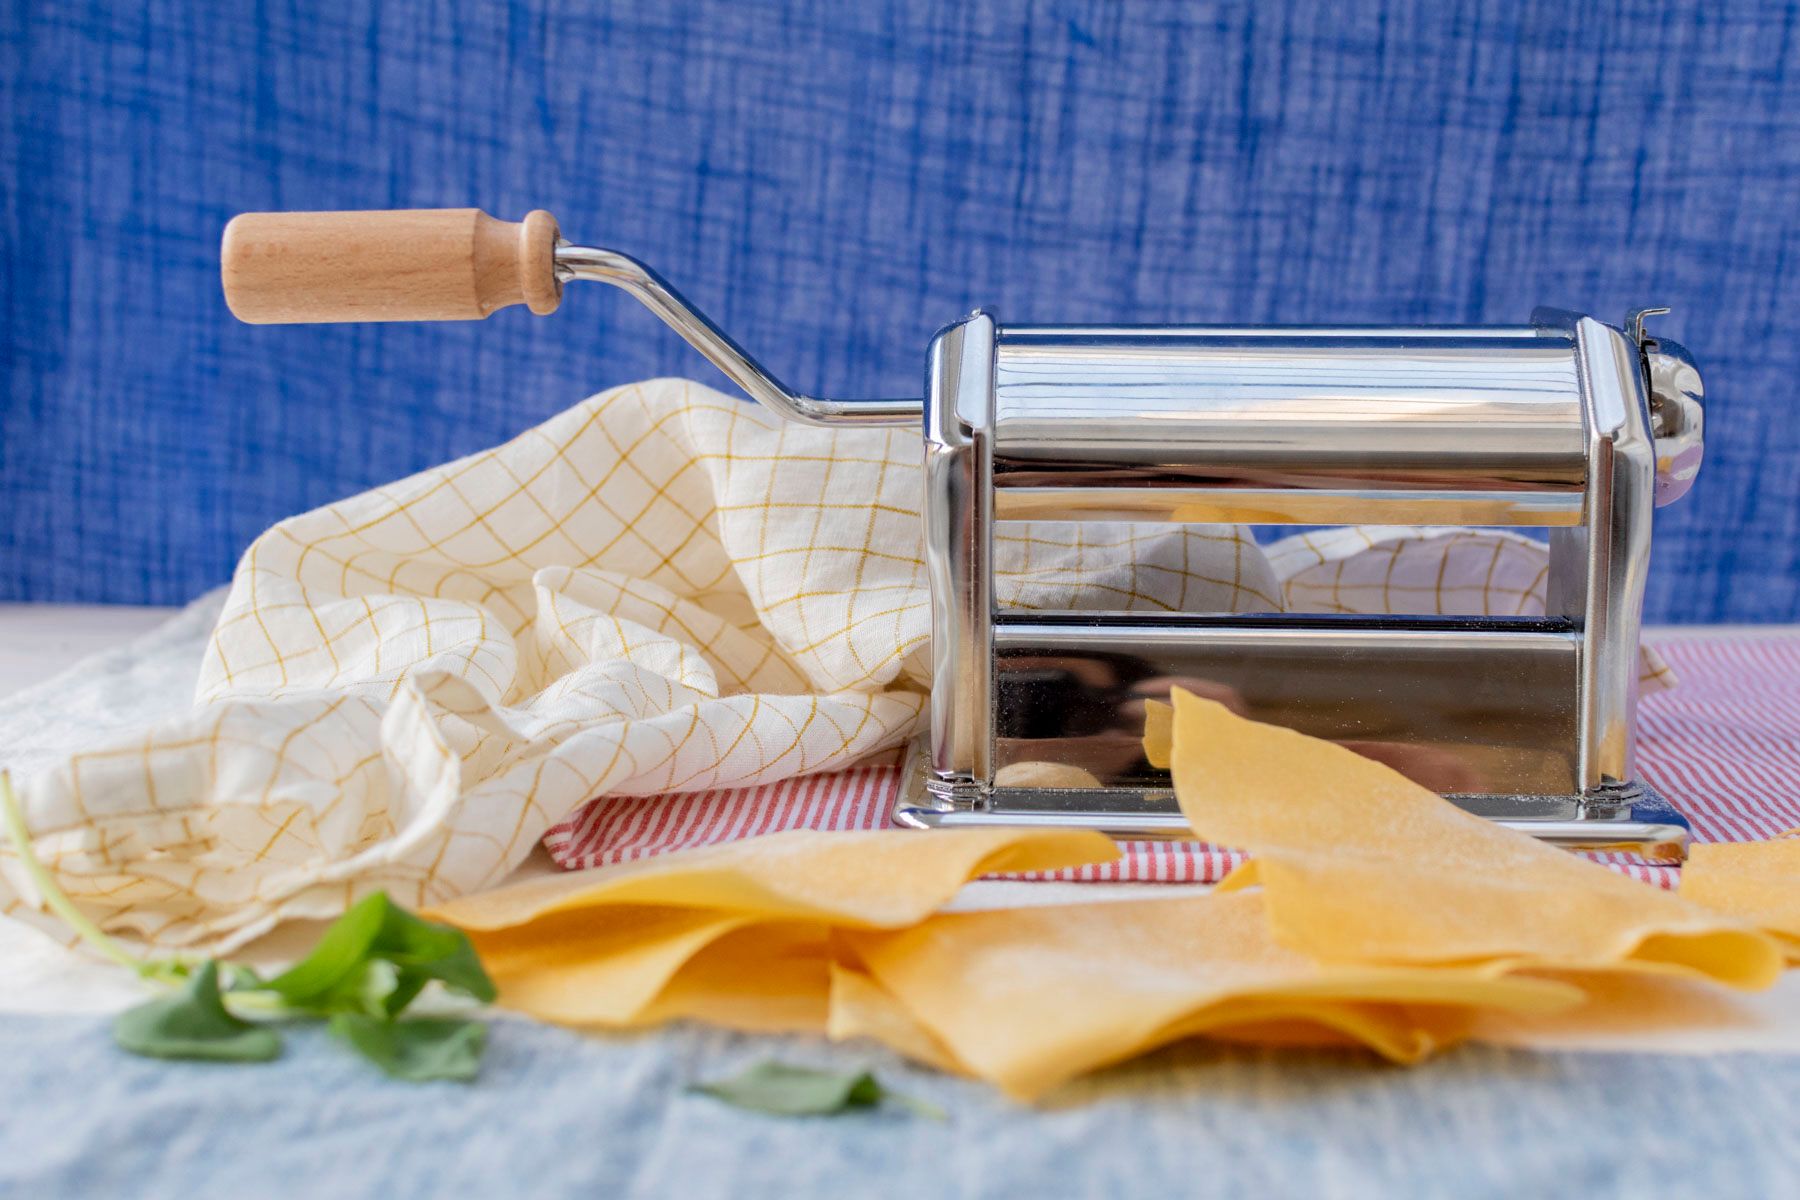 pâtes lasagnes réalisées grâce au cours "Cuisine Italienne : Apprenez à confectionner vos pates maison" d'Artesane